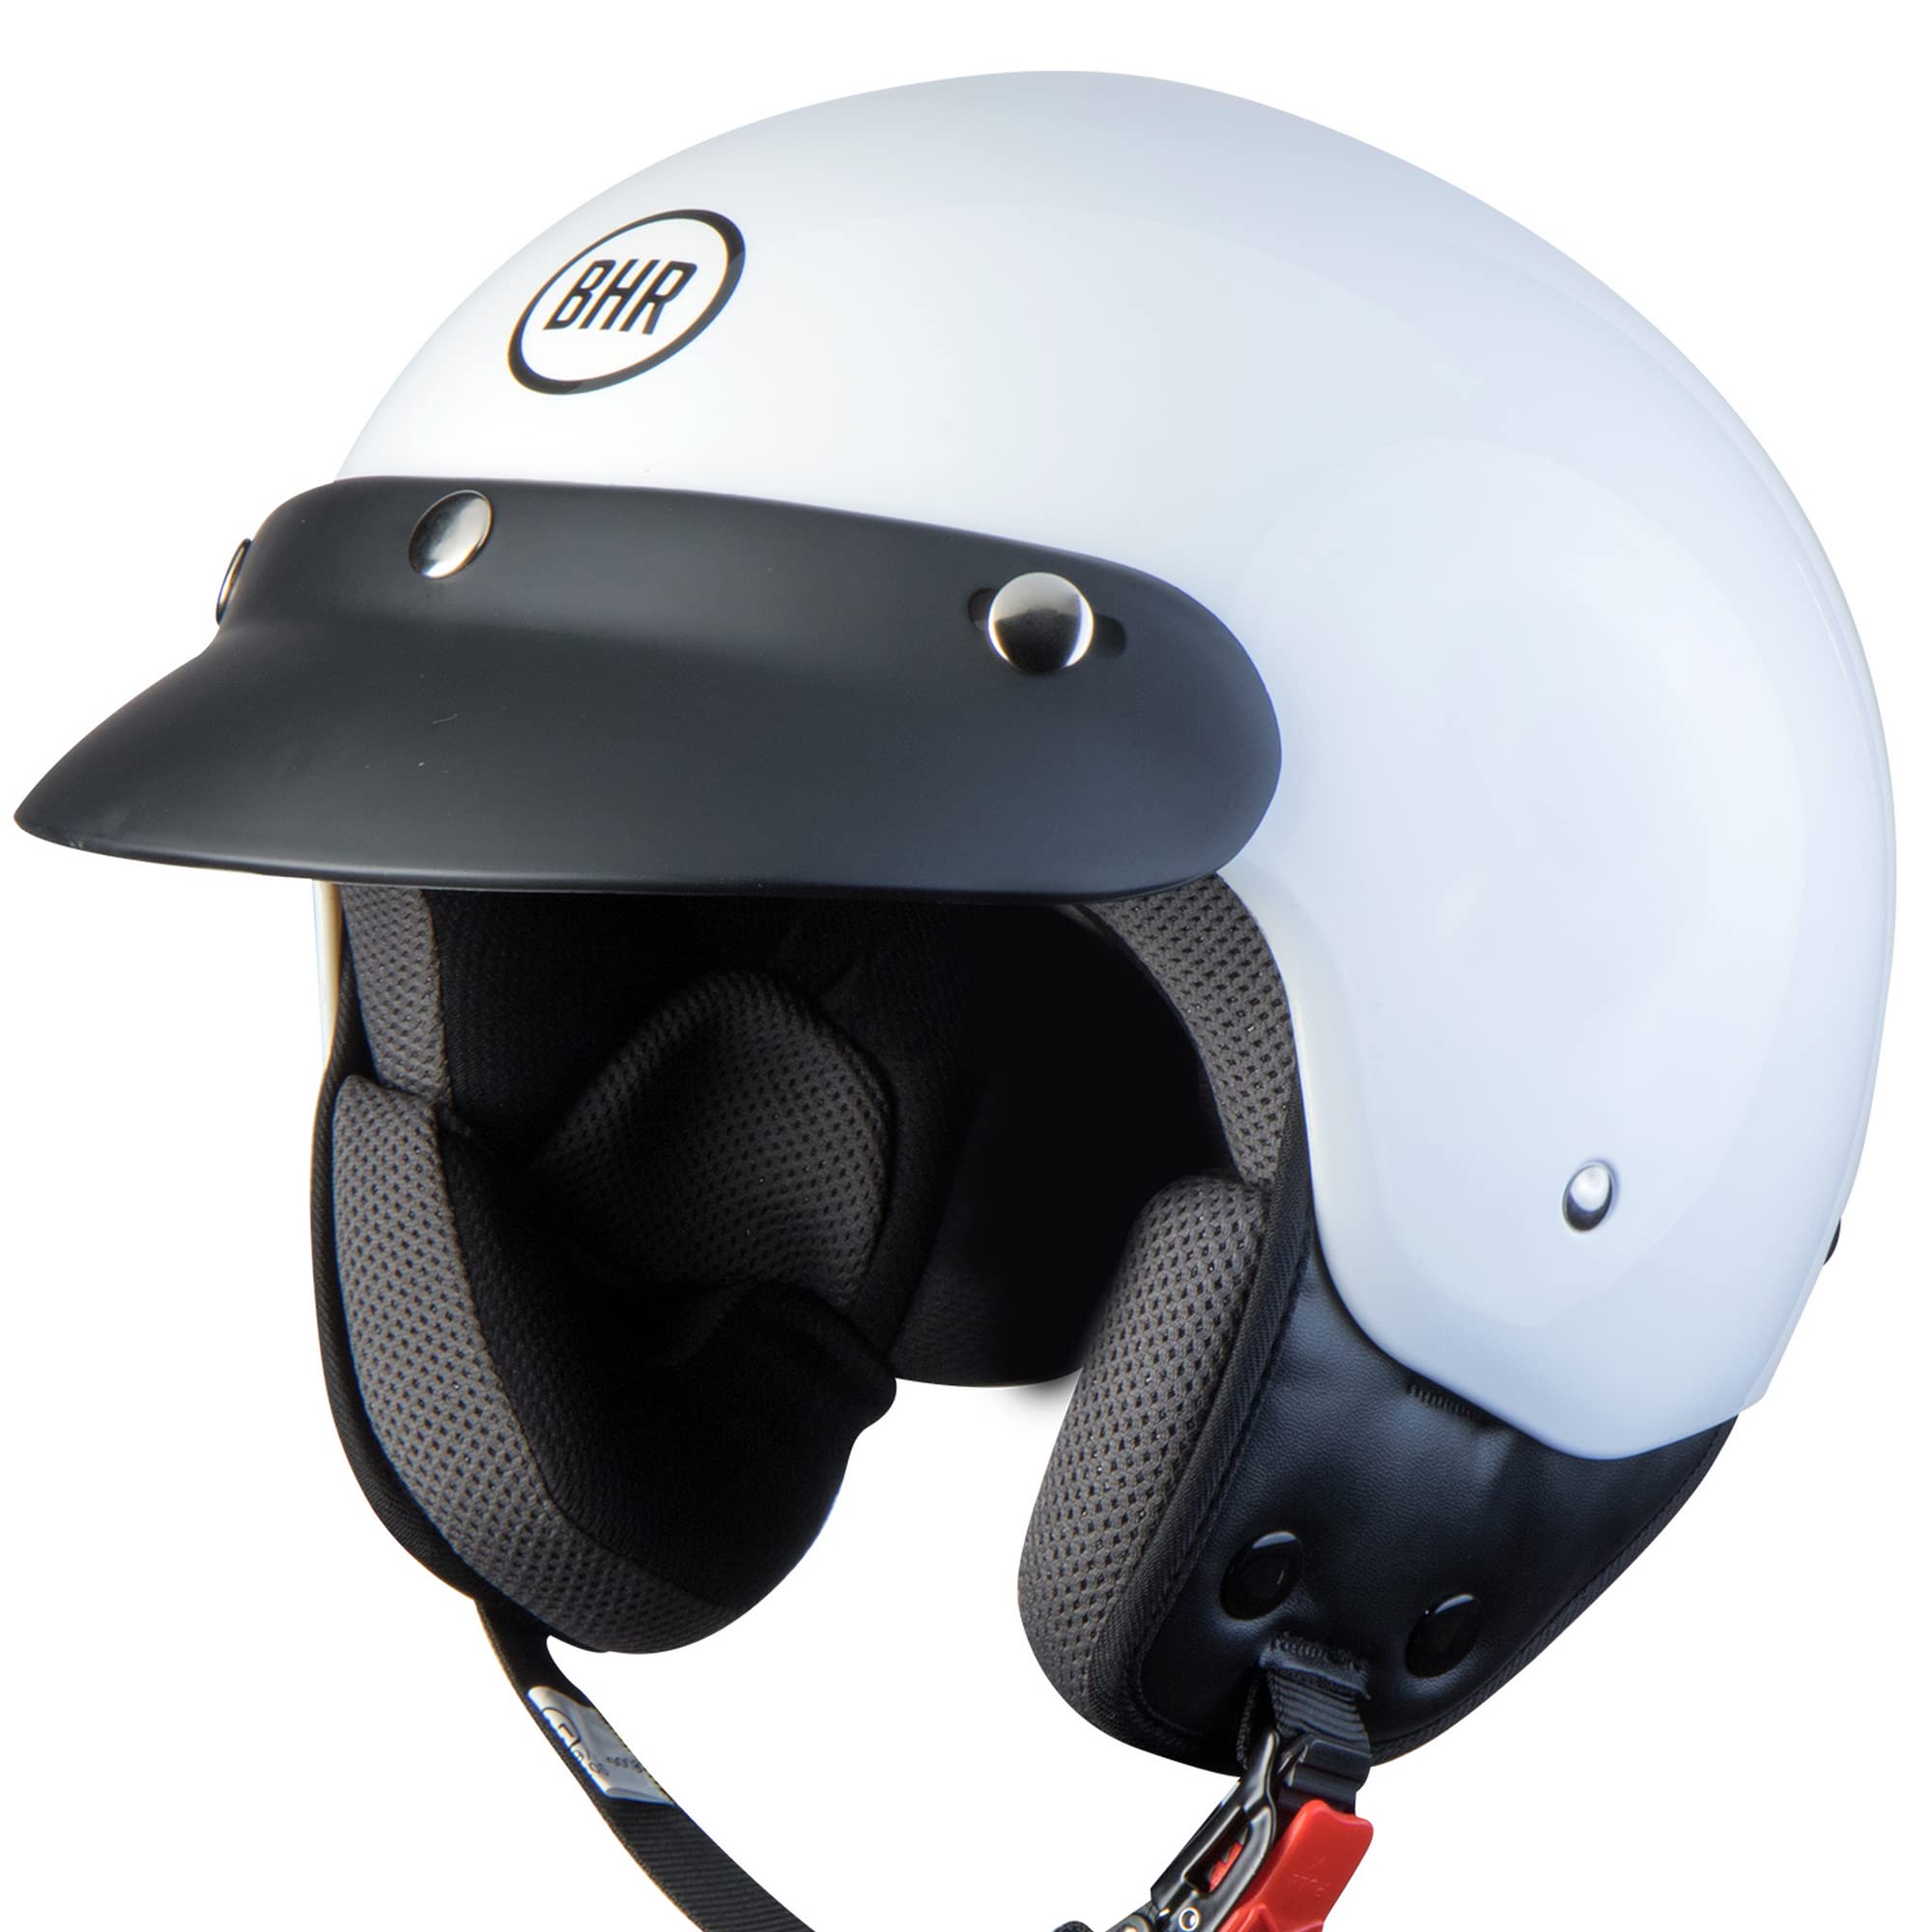 BHR Demi-Jet Helm 803 SIMPLY, Praktischer Rollerhelm mit ECE-Zulassung, Motorrad-Jet-Helm mit abnehmbarem Gesichtspolster, WEISS, XL